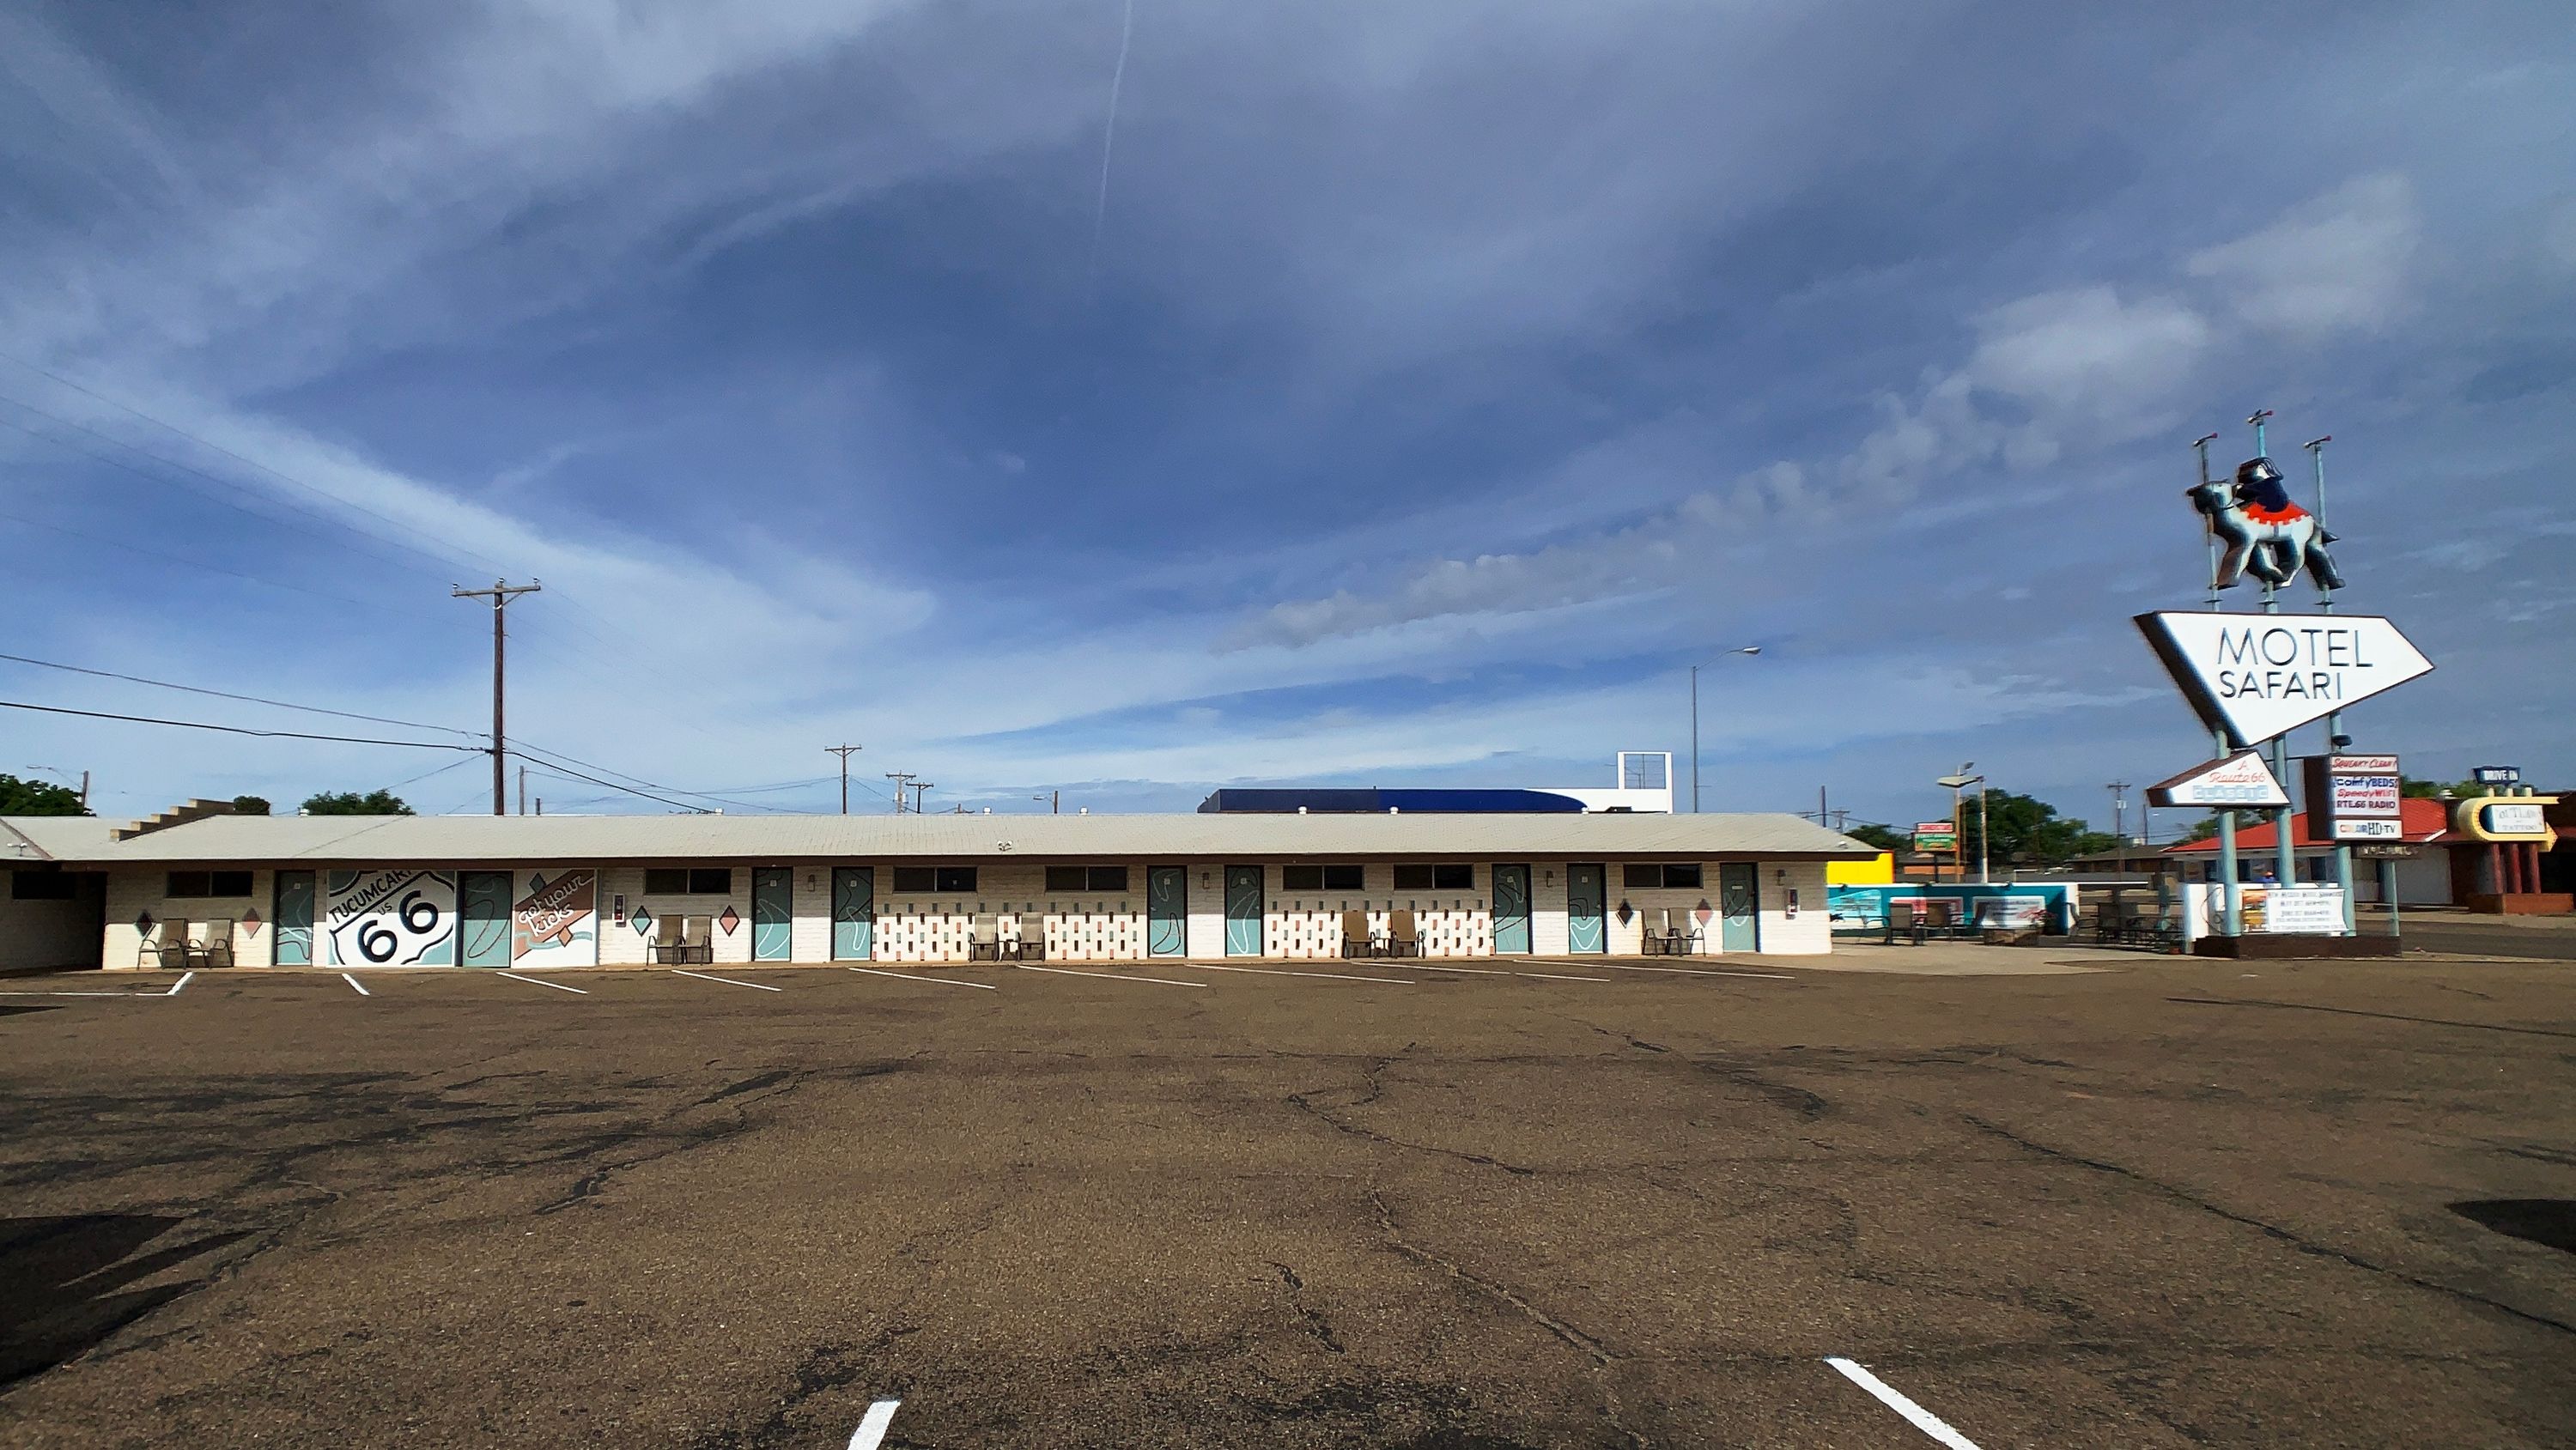 Motel Safari in Tucumari, NM